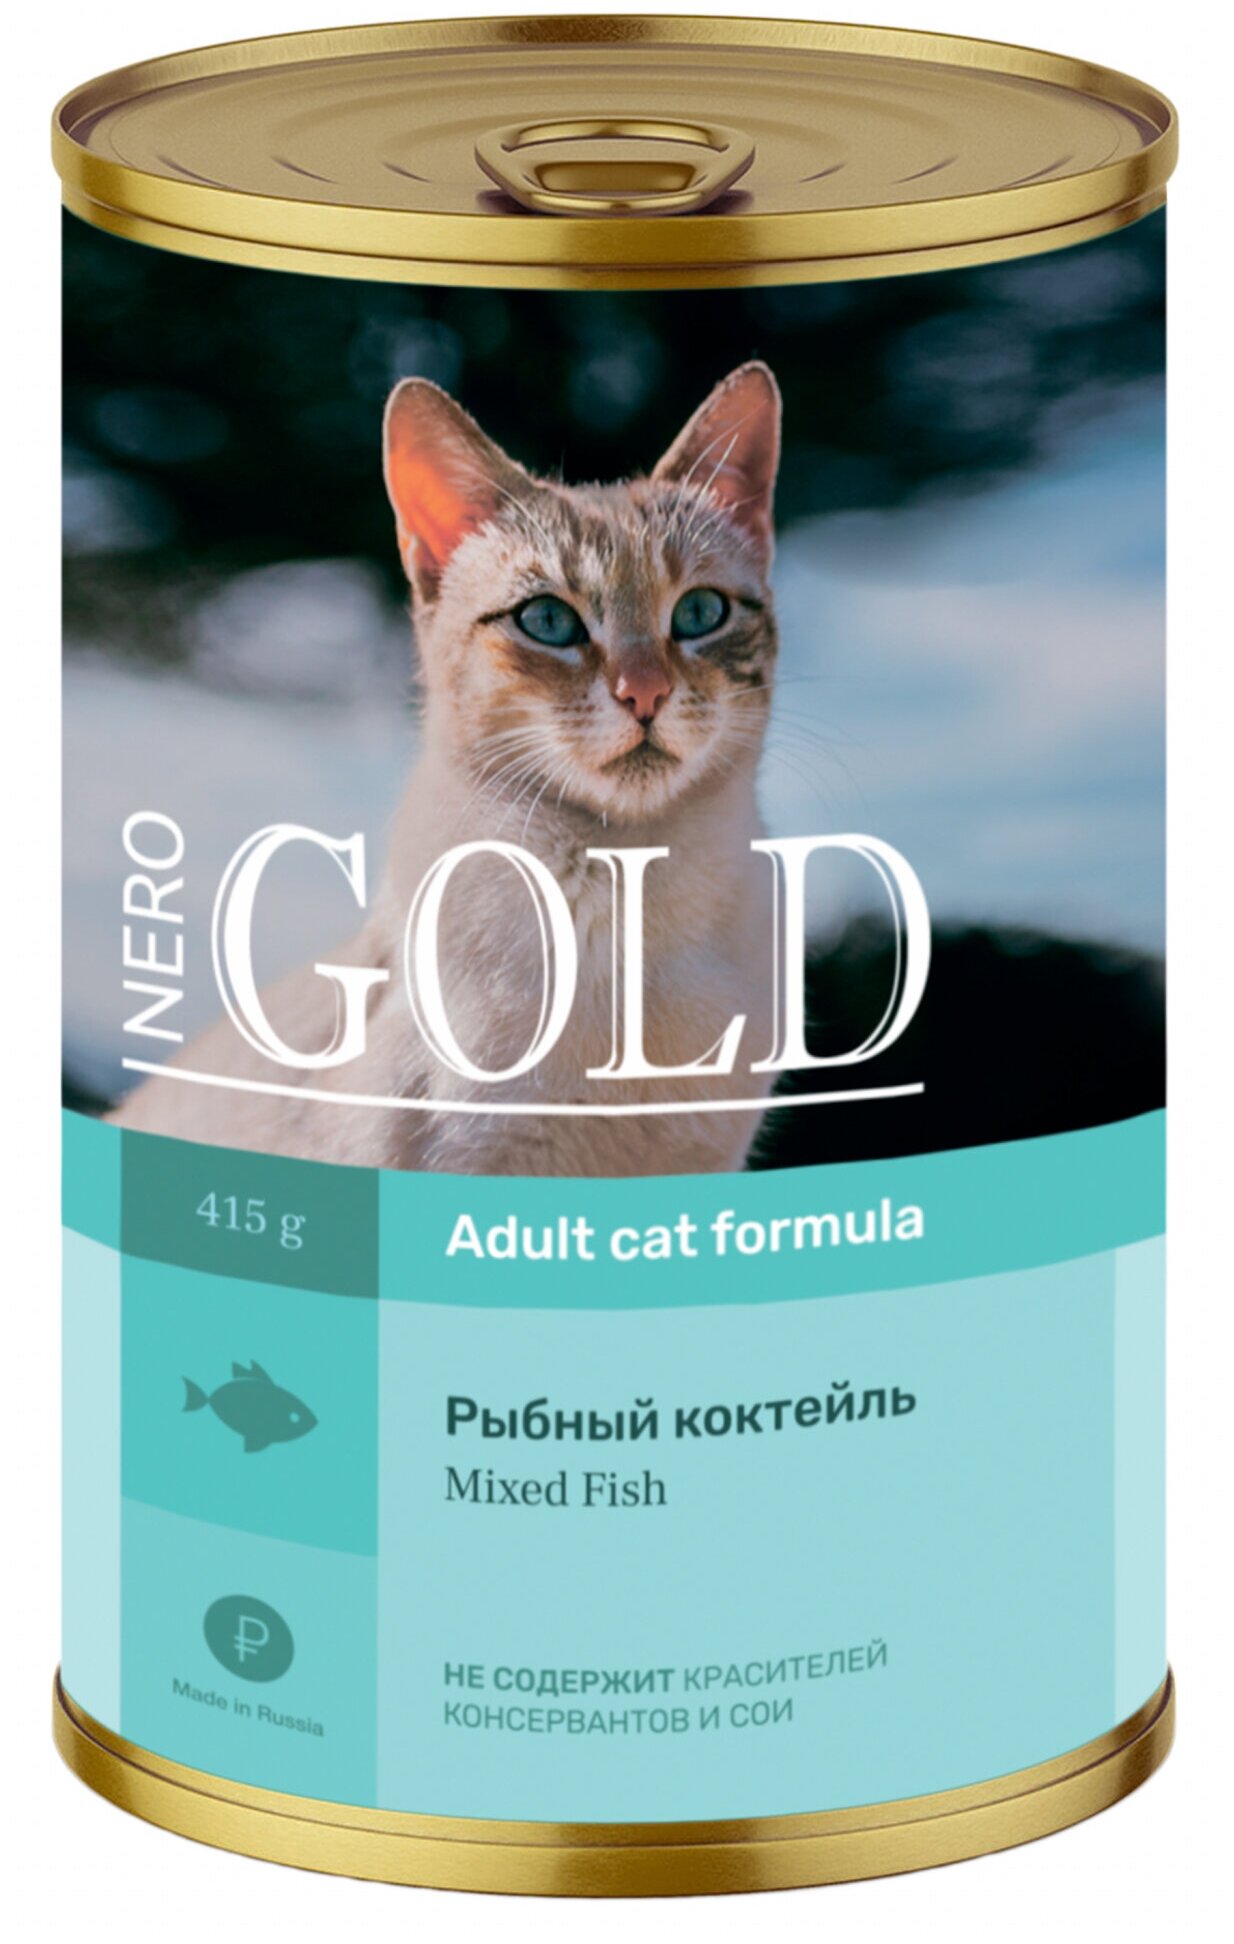 Корм Nero Gold Консервы для кошек "Рыбный коктейль" (Mixed Fish), 415 г x 12 шт